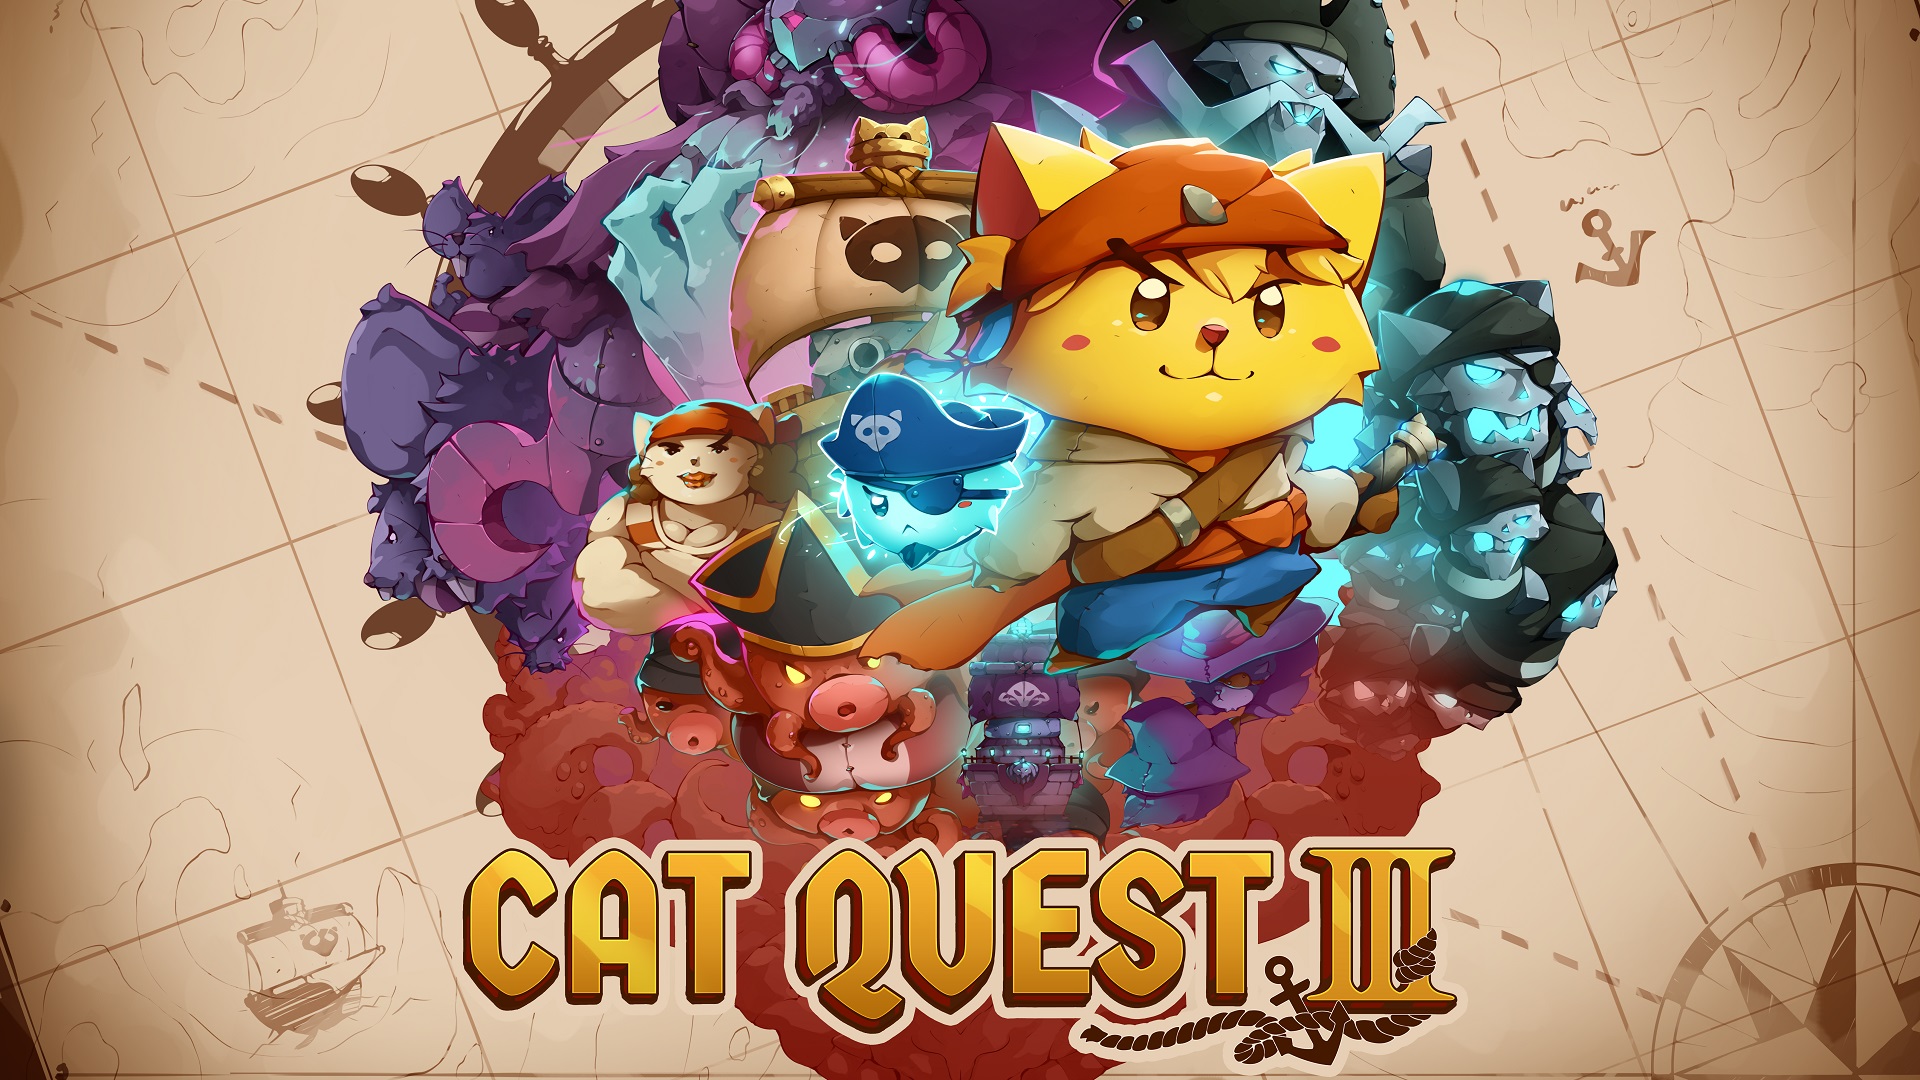 Cat Quest III